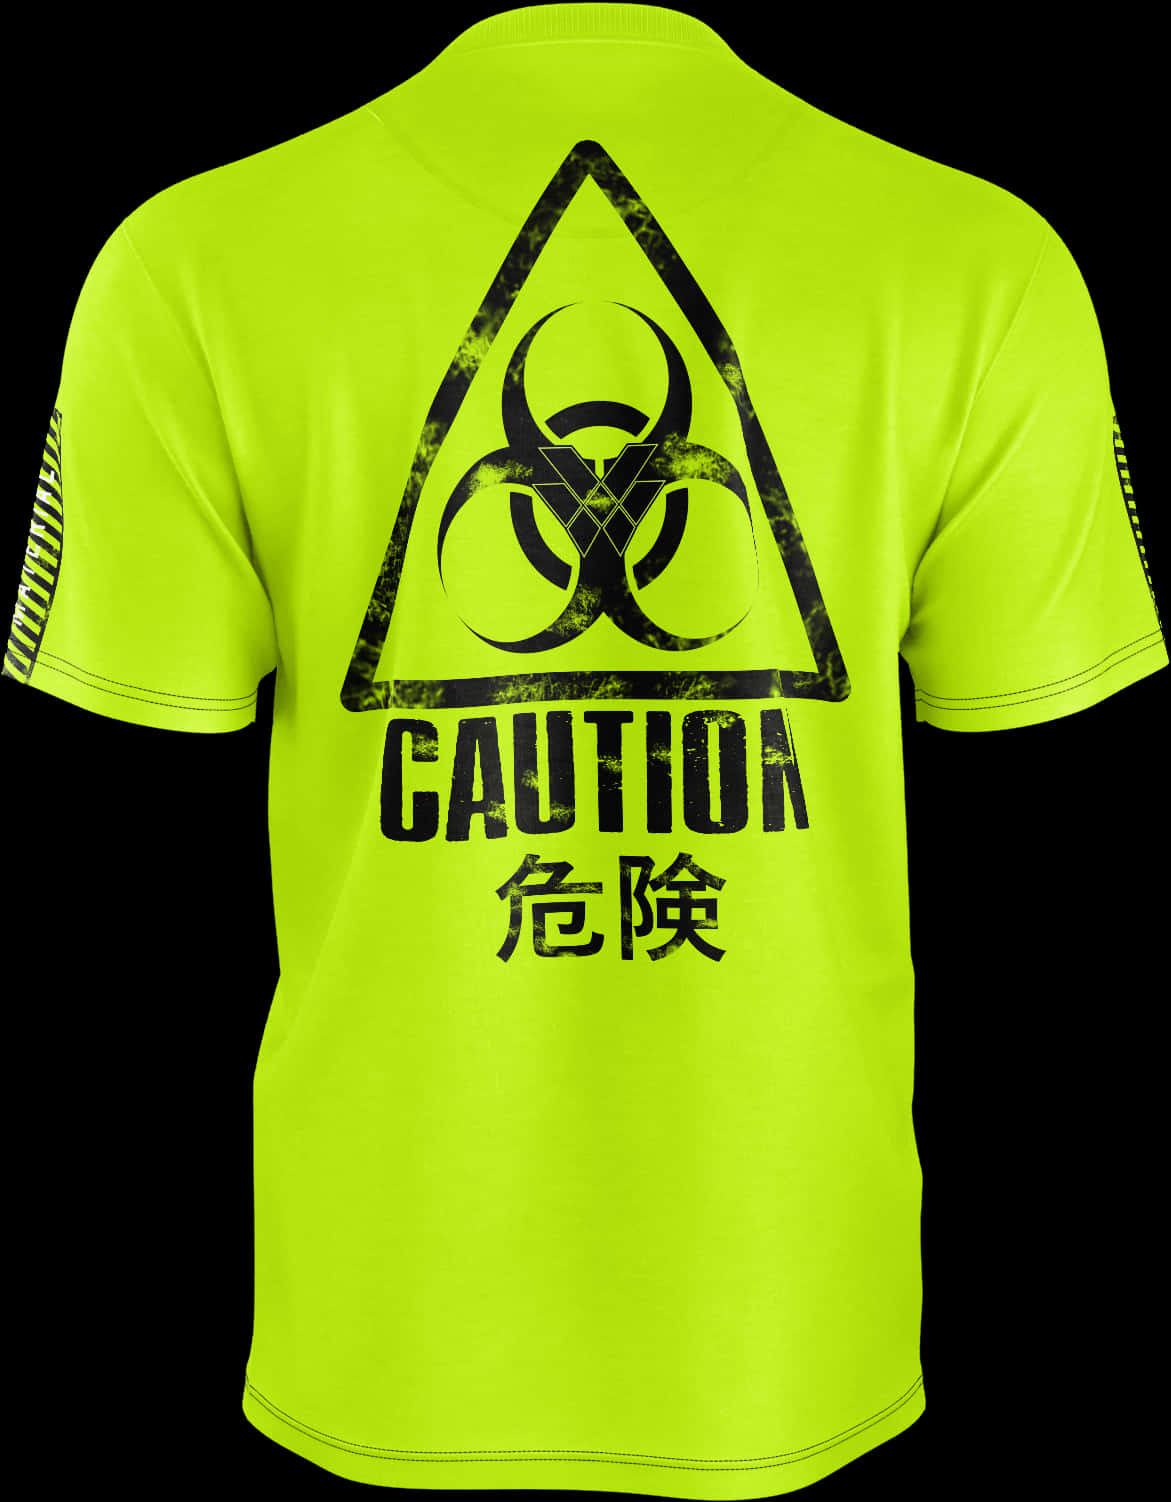 Biohazard Caution T Shirt Design